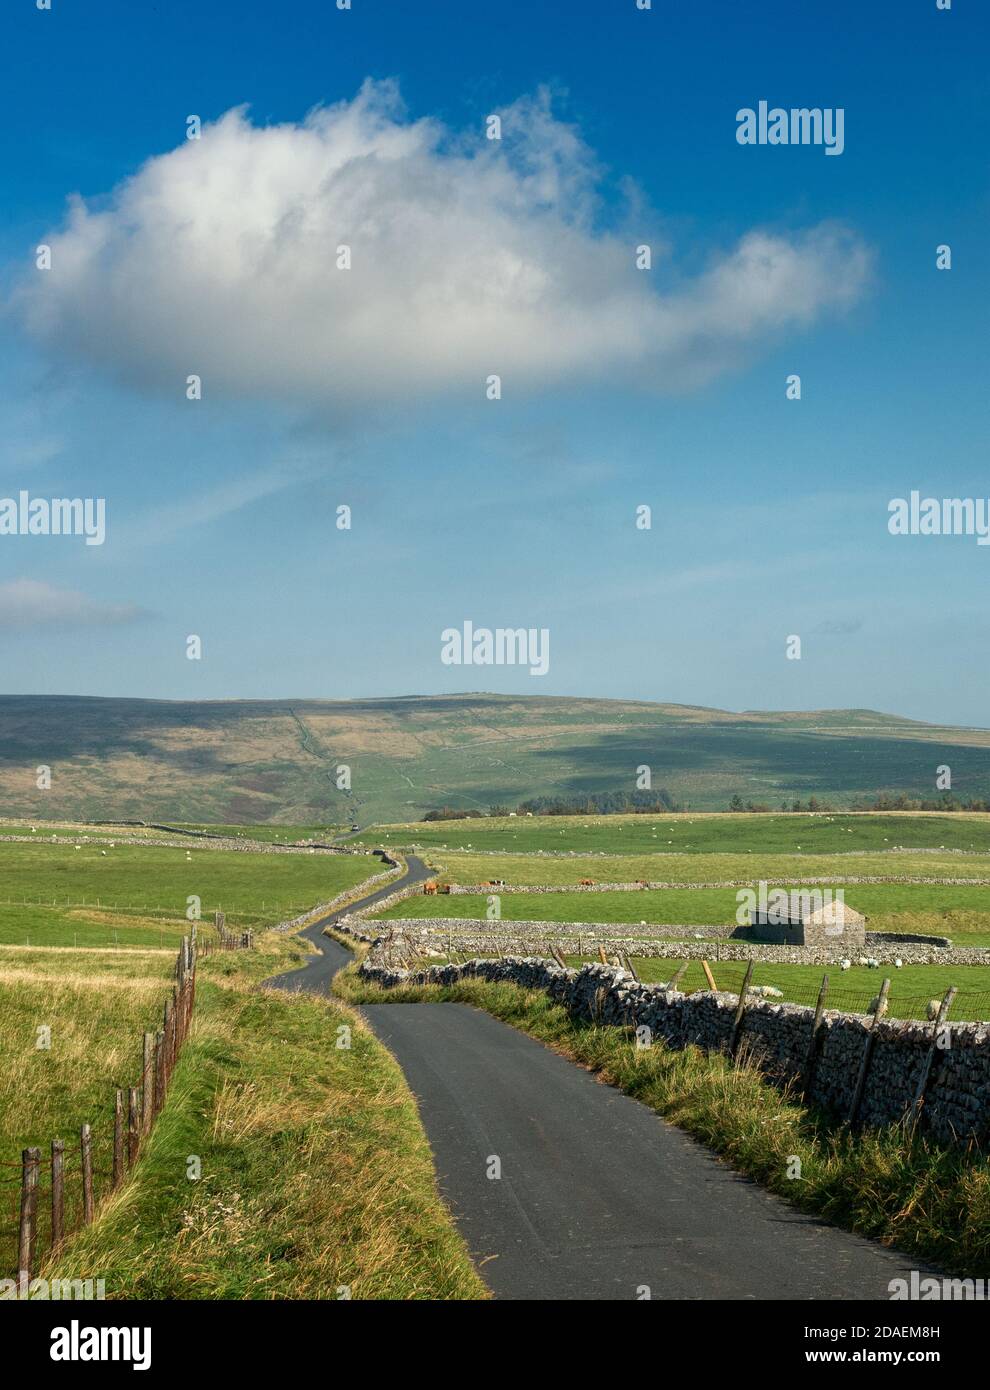 Paysage du Royaume-Uni : image verticale d'une vue imprenable sur la ruelle de la campagne à travers Malham Moor avec ancienne grange en pierre, le parc national de Yorkshire Dales dans un cadre magnifique Banque D'Images